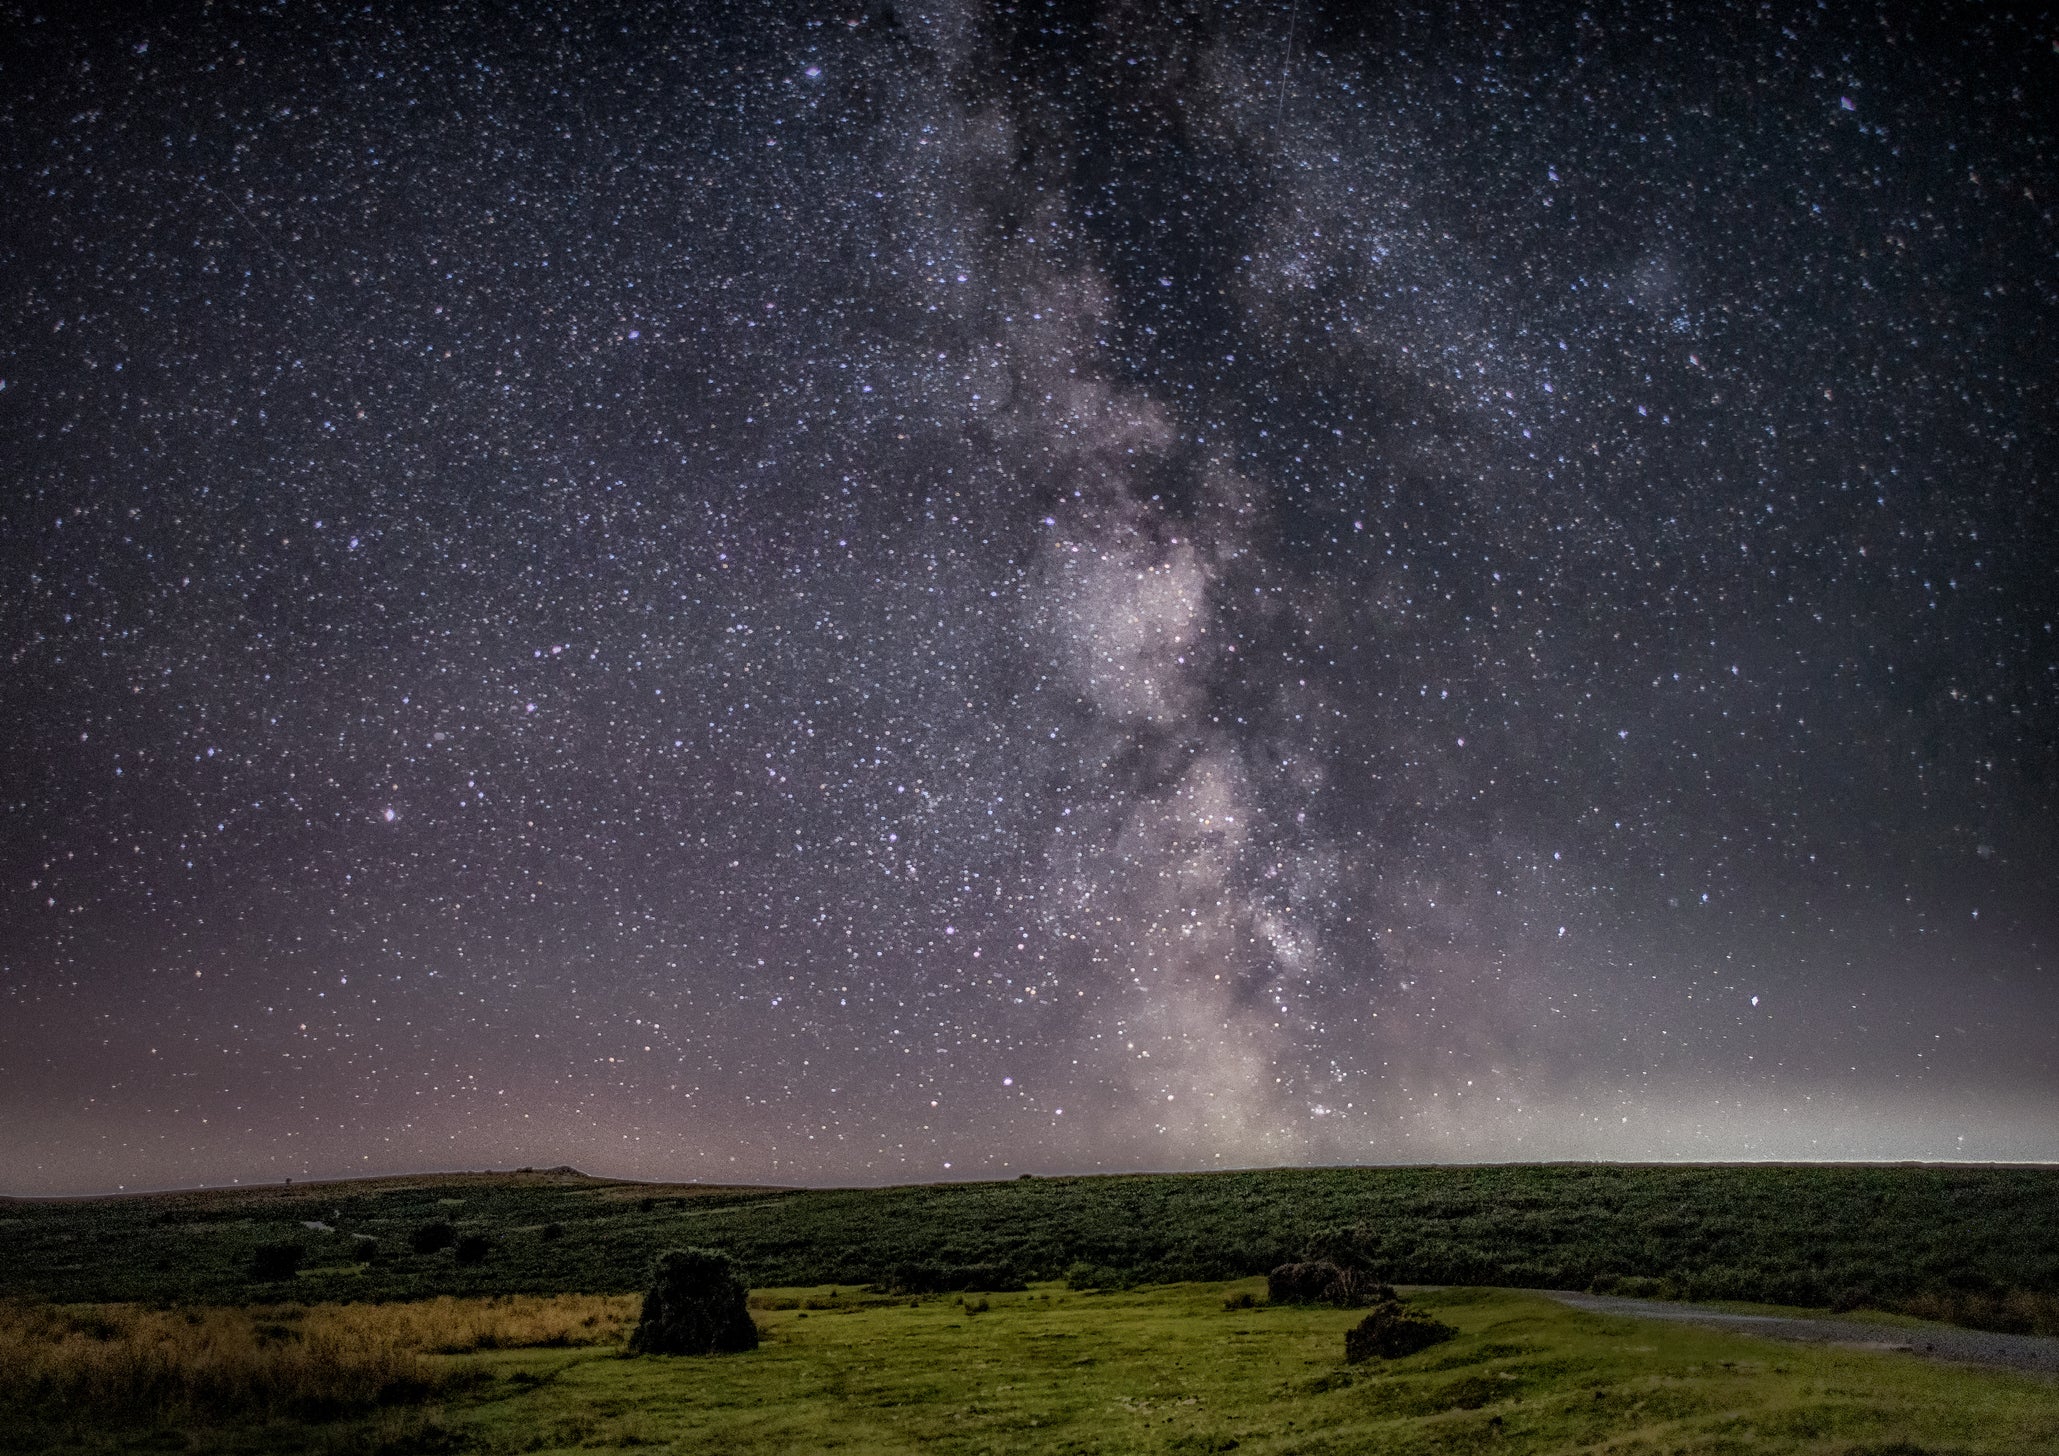 The Milky Way over South Dartmoor, Devon